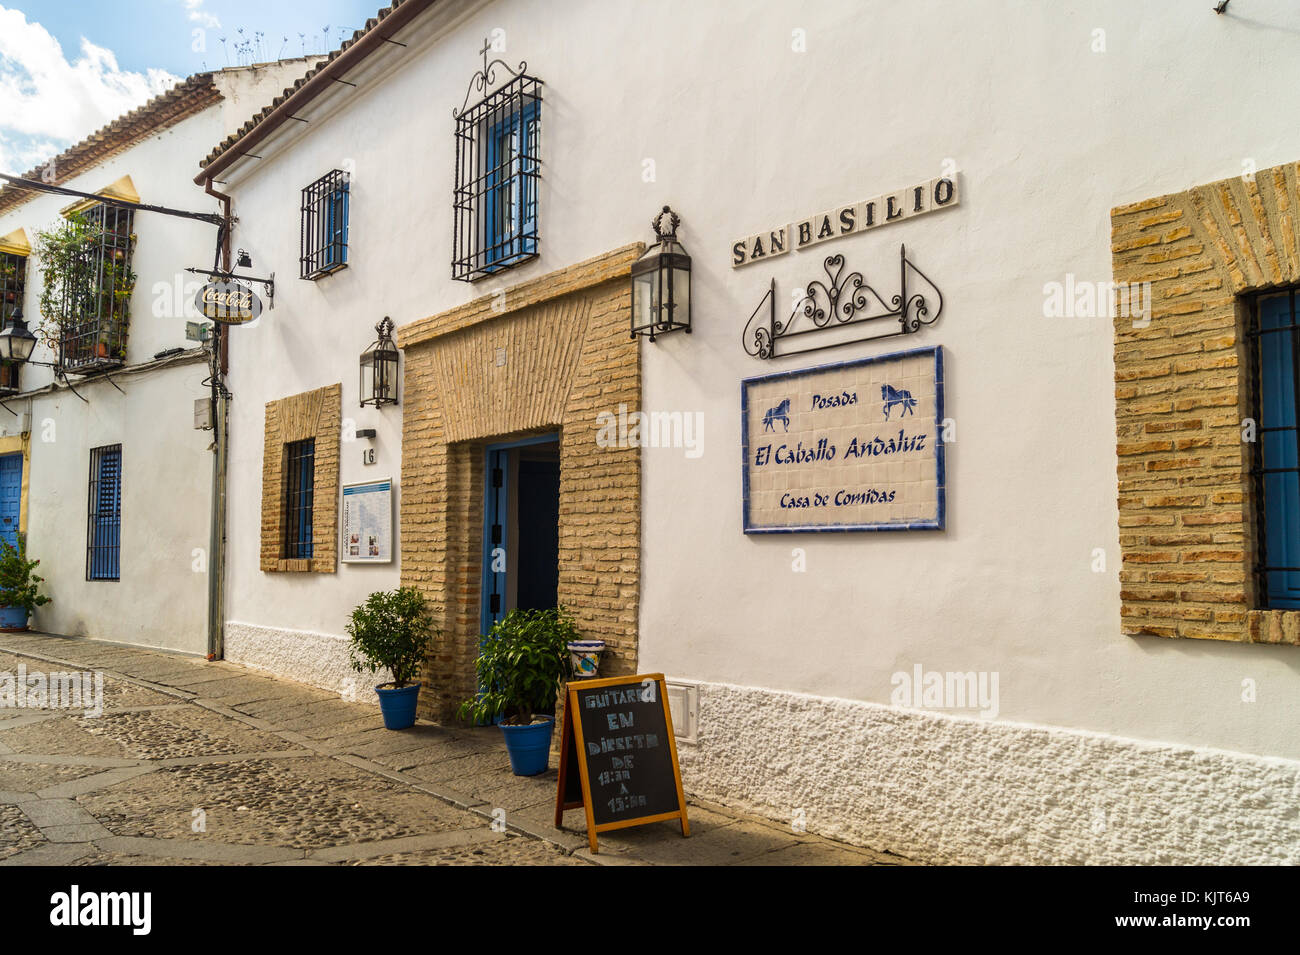 Posada del Caballo Andaluz restaurant, Barrio de San Basilio quarter Córdoba, Andalucia, Spain Stock Photo